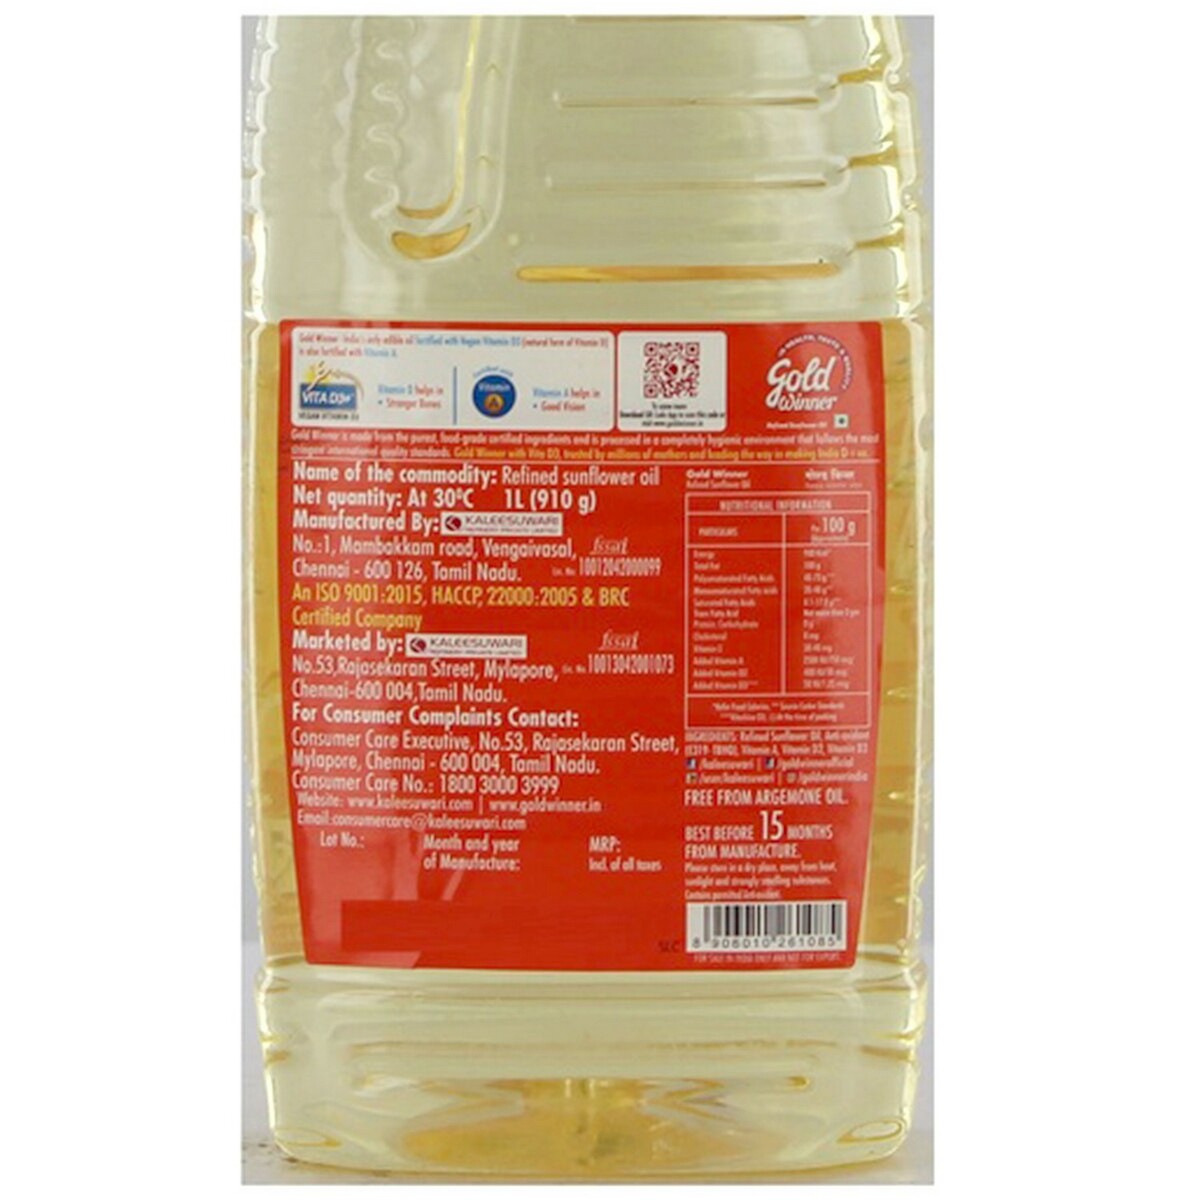 Gold Winner Refined Sunflower Oil 1 Liter Bottle